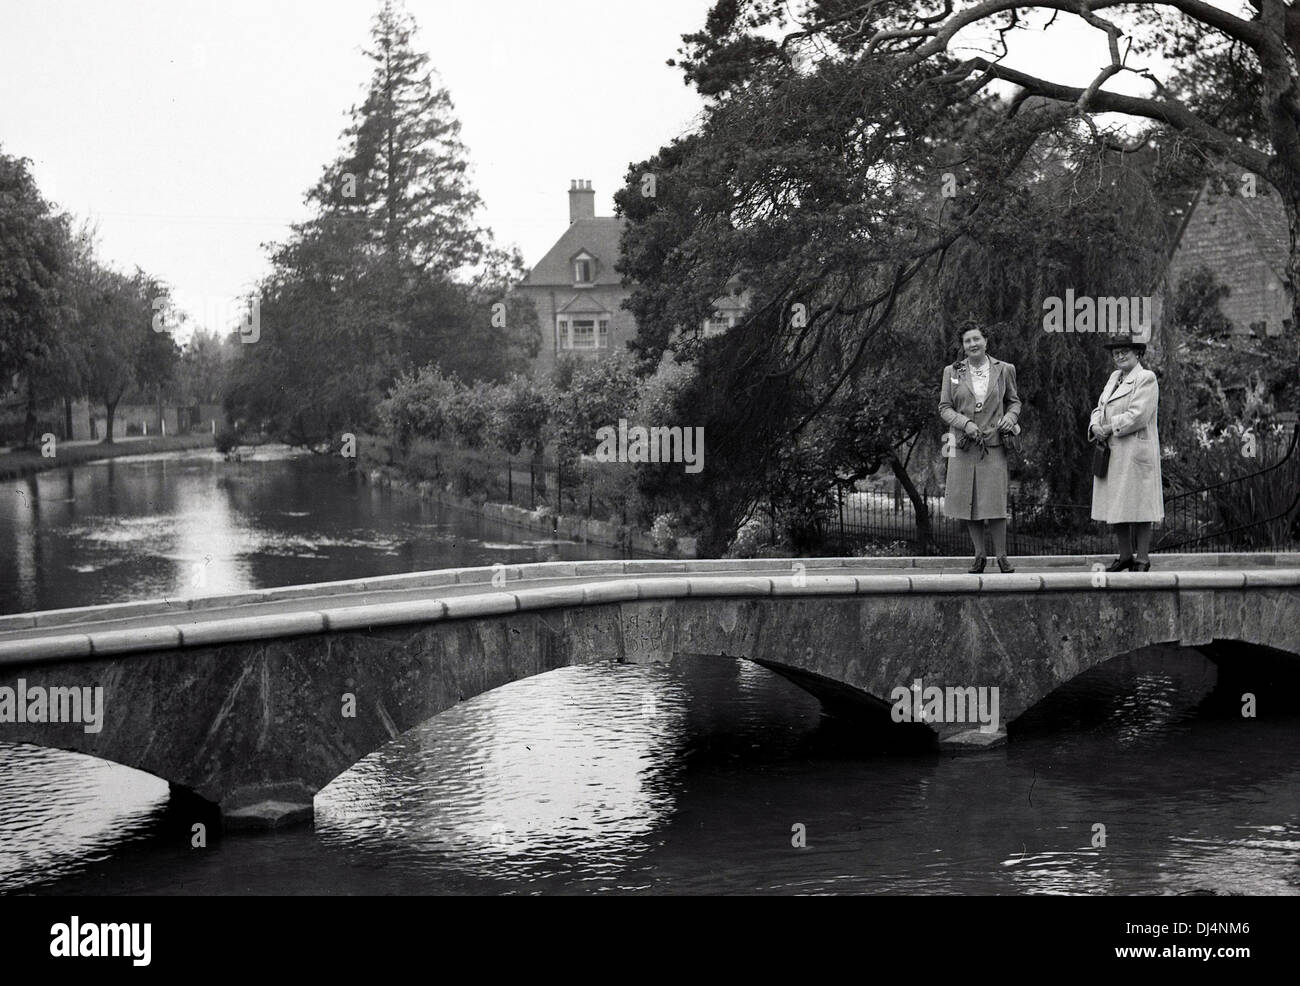 Historische Abbildung von 193os zwei Damen outdoor Jacken stehen auf einer kleinen Brücke über einen Fluss tragen. Stockfoto